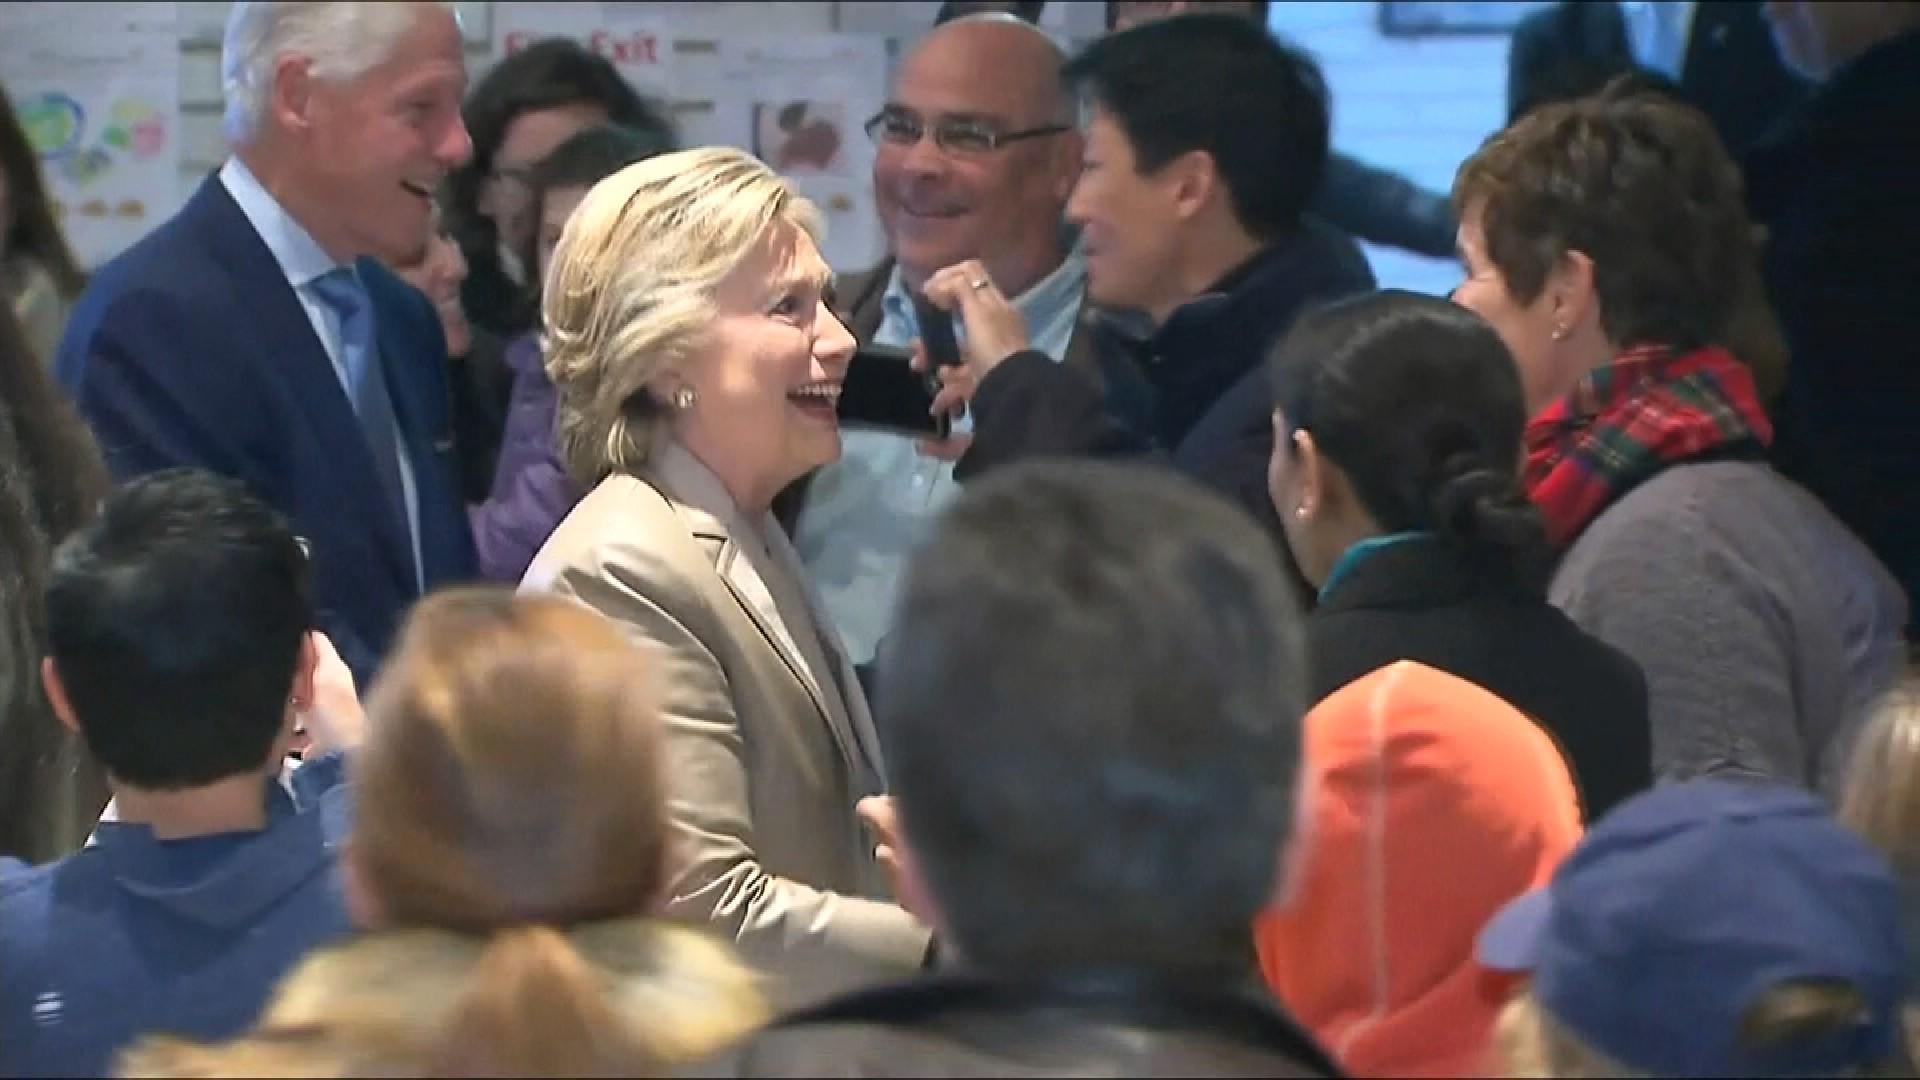 Ứng cử viên đảng Dân chủ Hillary Clinton đồng hành cùng phu quân Bill Clinton đến điểm bỏ phiếu tại Chappaqua, bang New York. Bà Clinton đã thân thiện bắt tay các cử tri khác tuy nhiên lại giữ khoảng cách với báo giới.